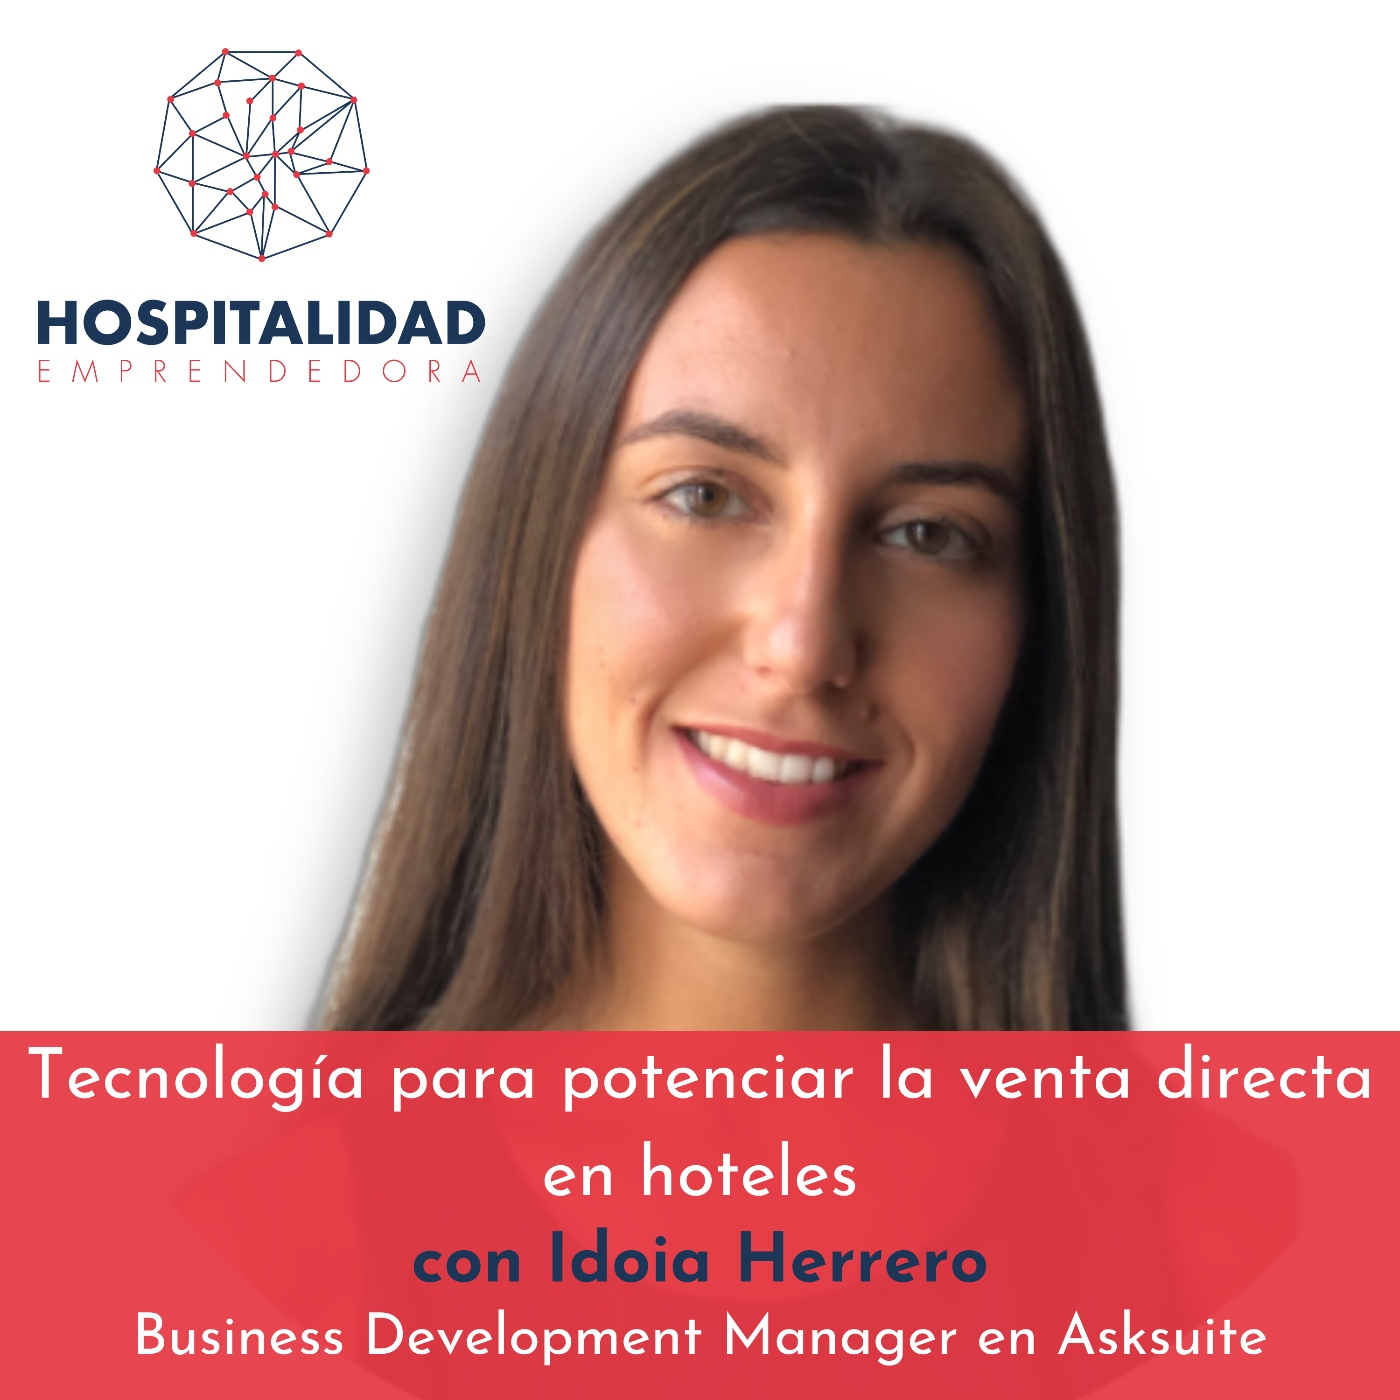 Tecnología para potenciar la venta directa en hoteles con Idoia Herrero. Temp 6 Episodio 9